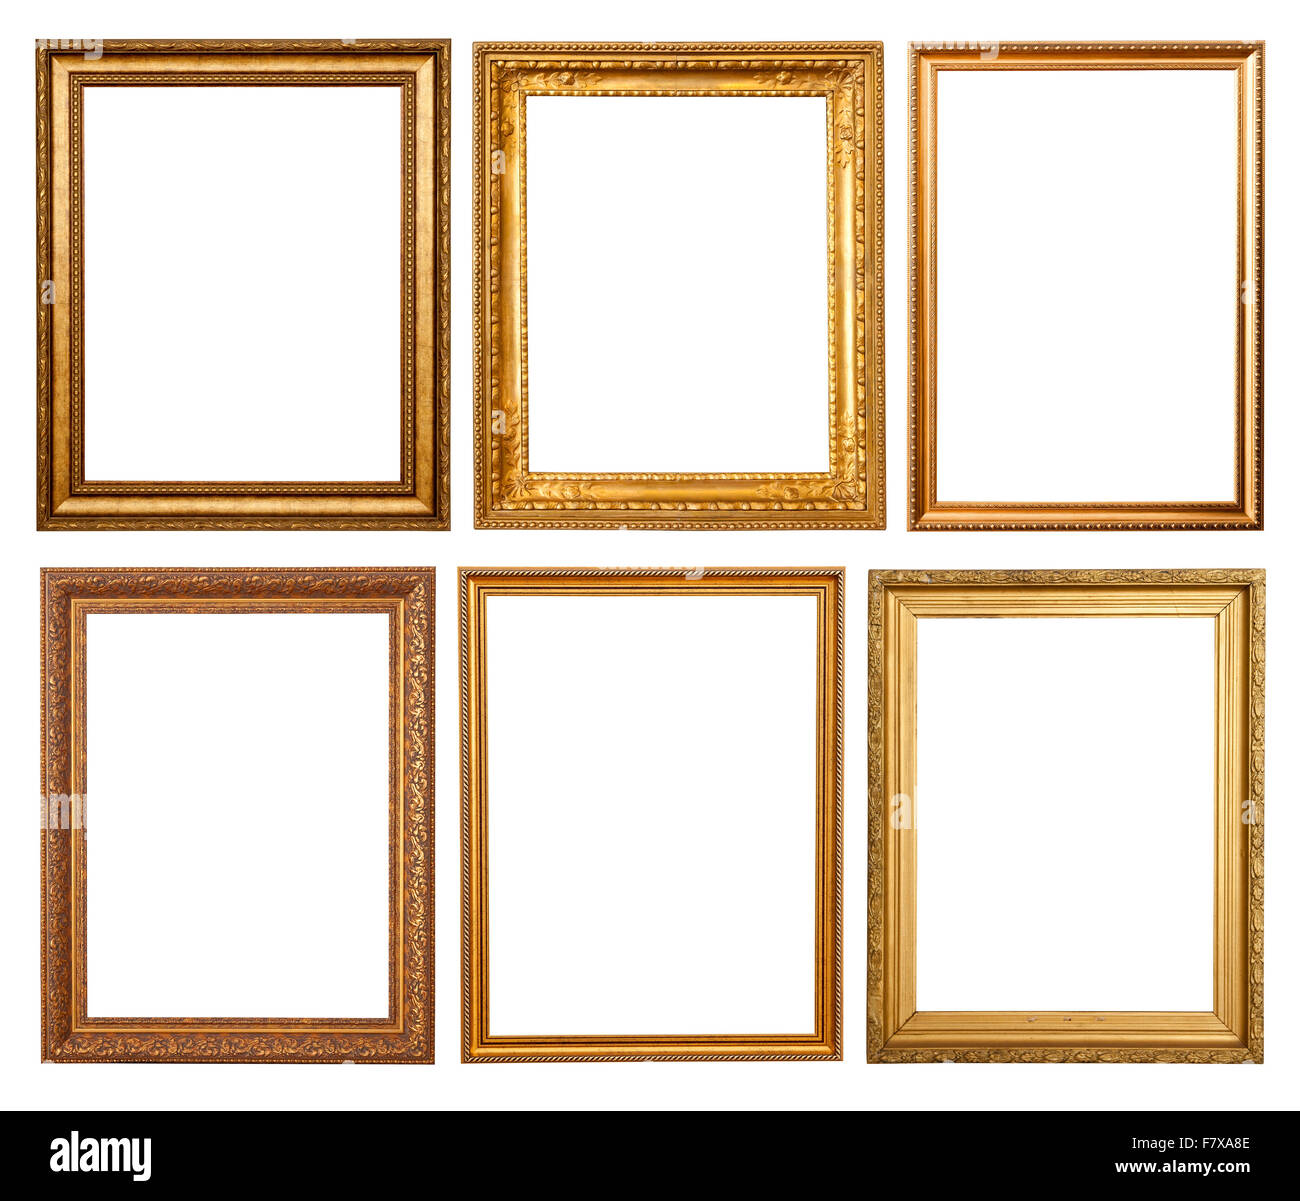 https://c8.alamy.com/comp/F7XA8E/set-of-6-gold-frames-isolated-over-white-background-F7XA8E.jpg